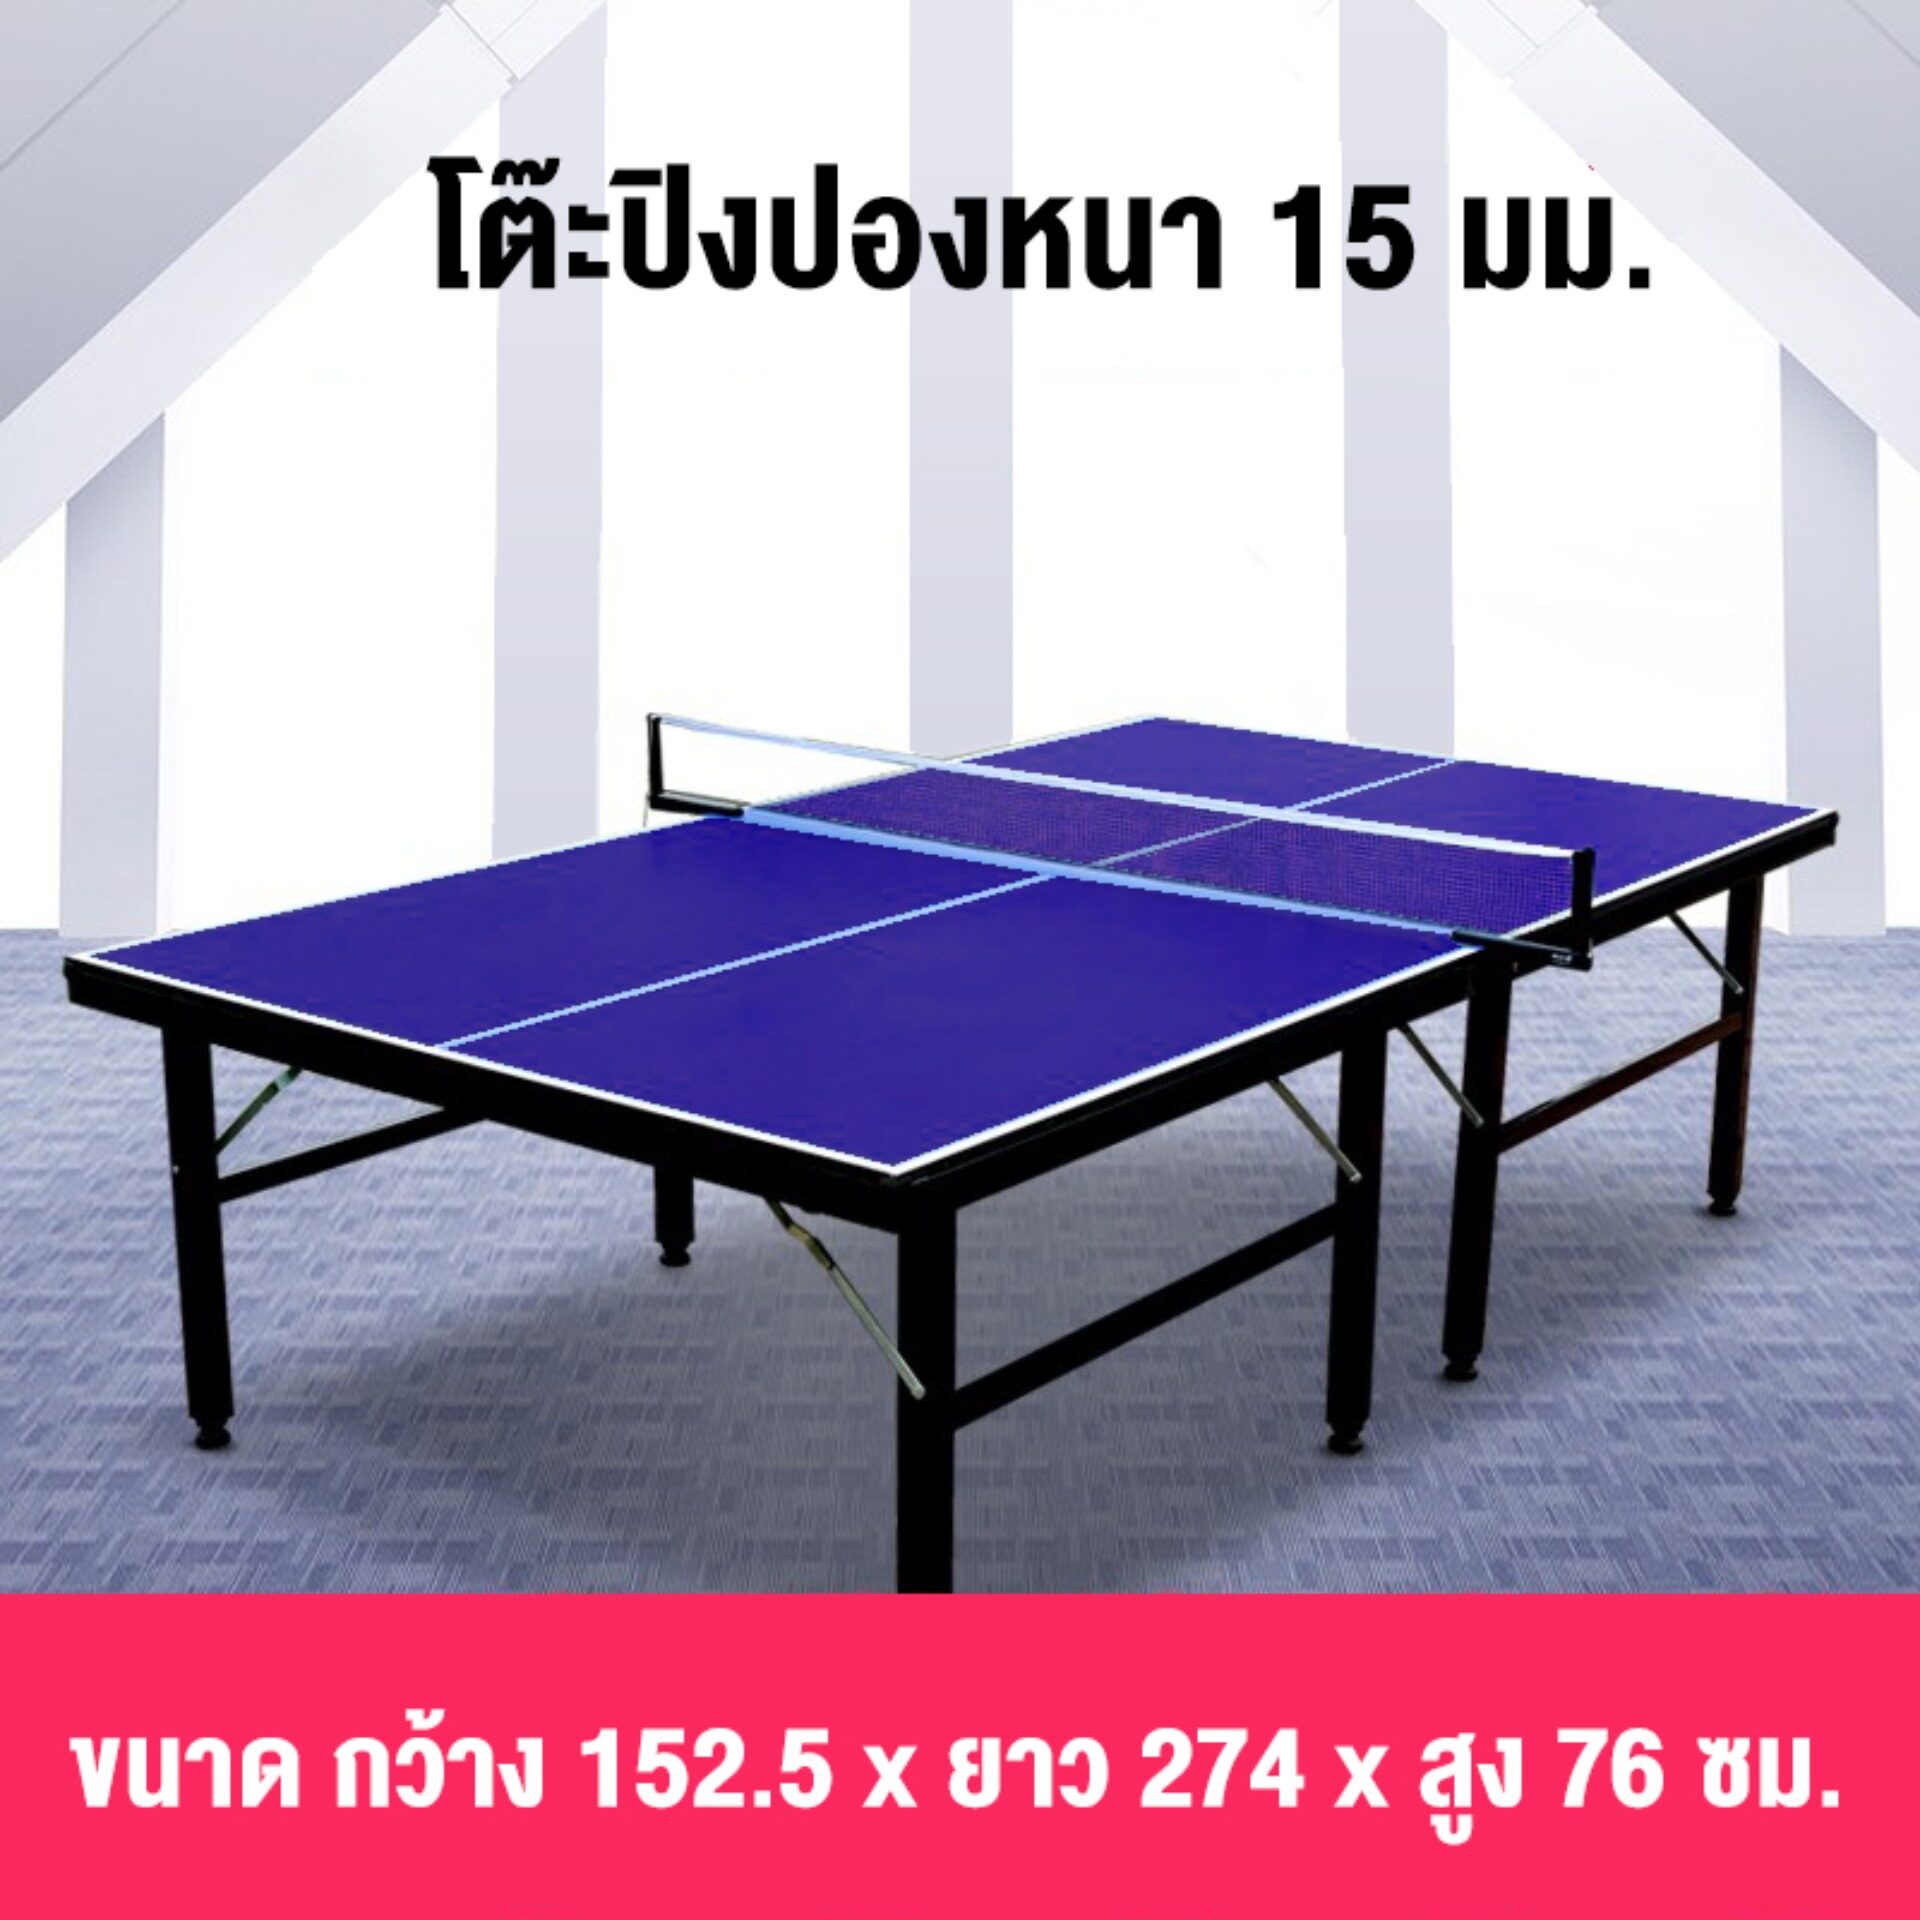 โต๊ะปิงปอง Table Tennis Table  โต๊ะปิงปองมาตรฐานแข่งขัน พับเก็บง่าย